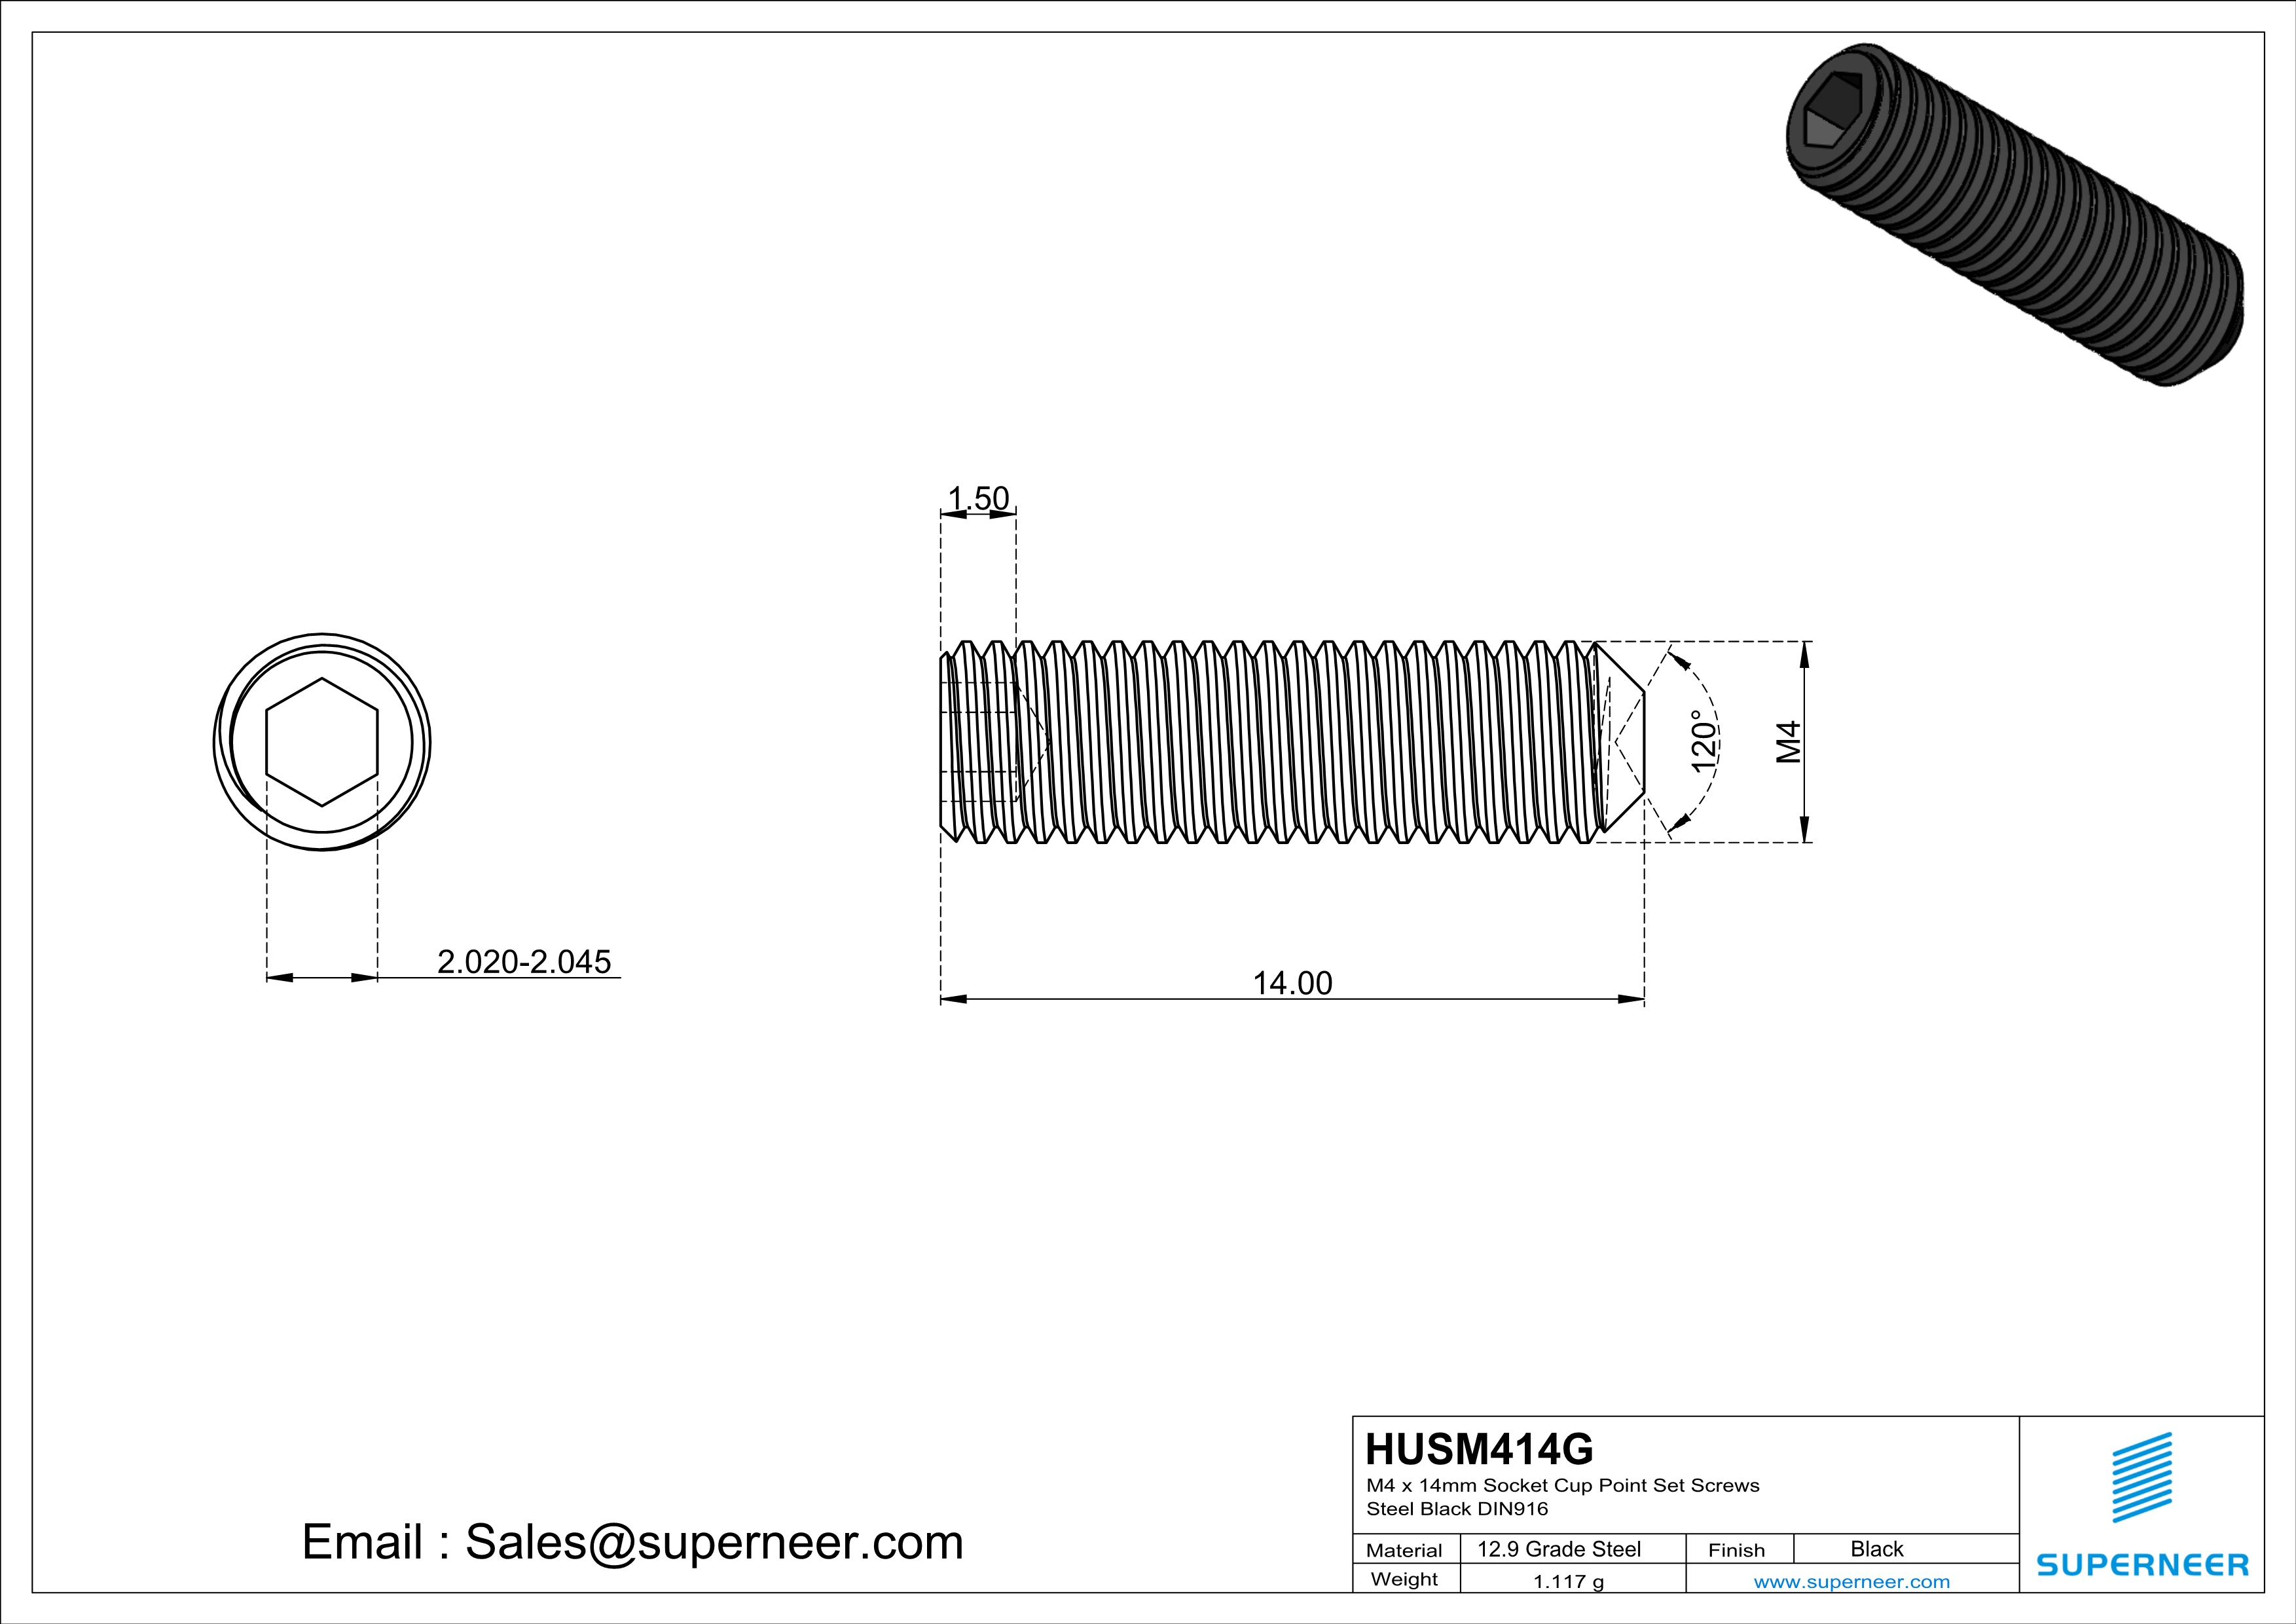 M4 x 14mm Socket Cup Point Set Screws 12.9 Carbon Steel Black DIN916